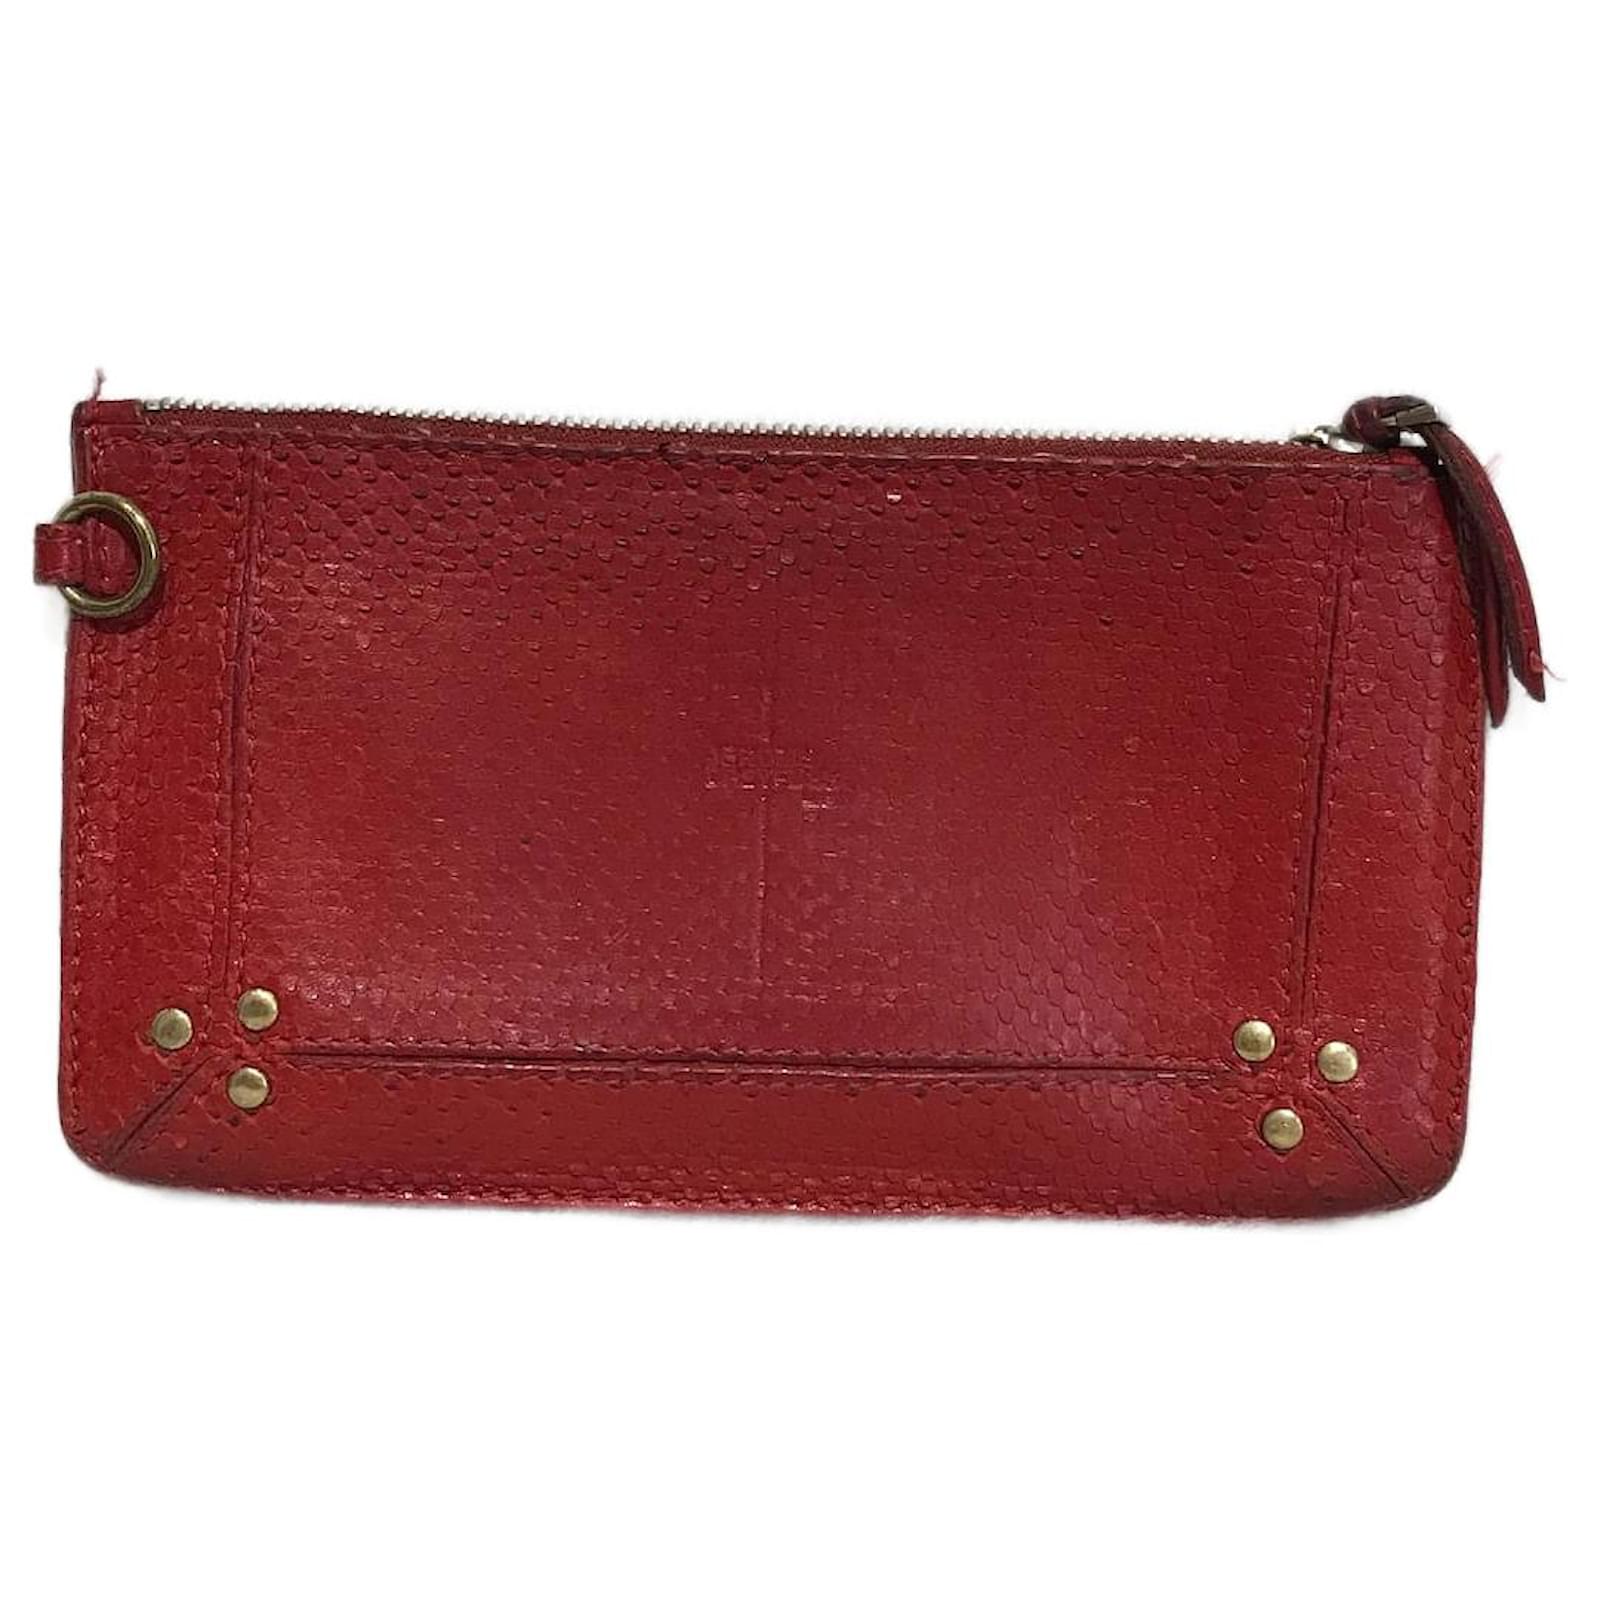 Seasonal - Official Bottega Veneta Early Fall & Fall/Winter 2013-2014 Post  pics and discuss here | Bags, Beautiful handbags, Leather handbags